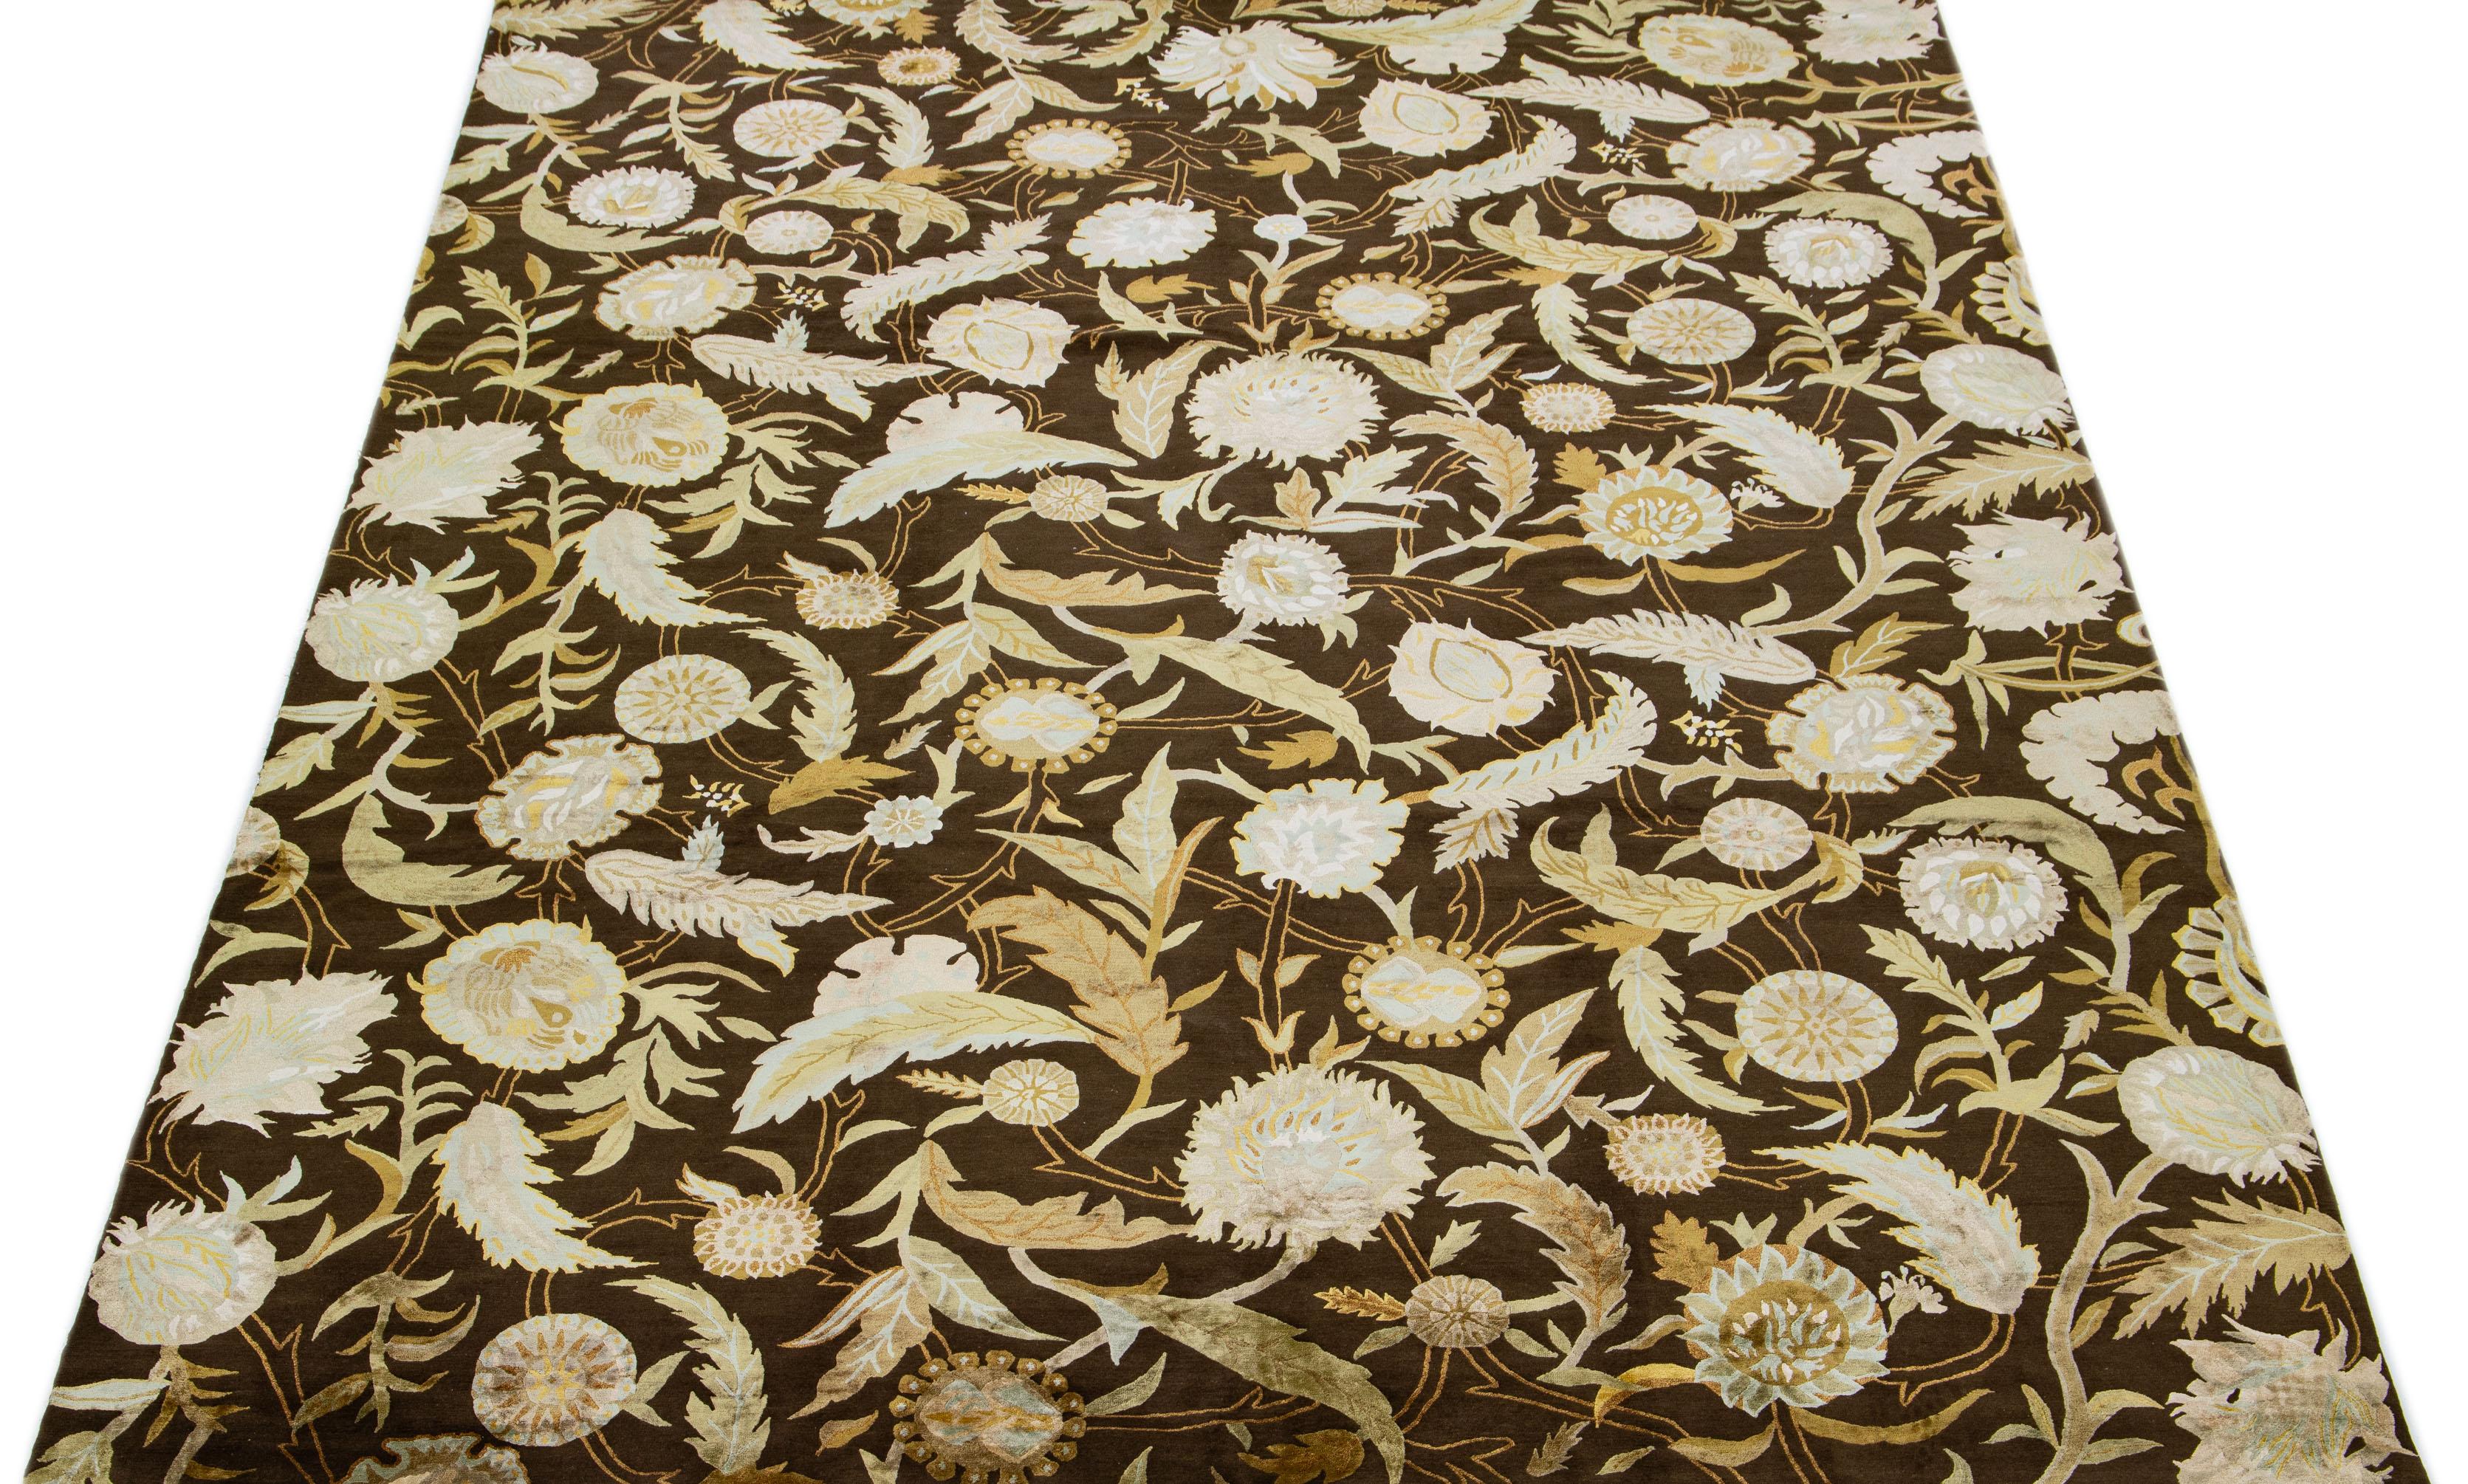 Schöner moderner Ikat-Teppich aus handgeknüpfter Wolle mit einem braunen Farbfeld. Dieser nepalesische Teppich hat beige, blaue und grüne Akzente und ein wunderschönes florales Allover-Muster.

Dieser Teppich misst: 9'9